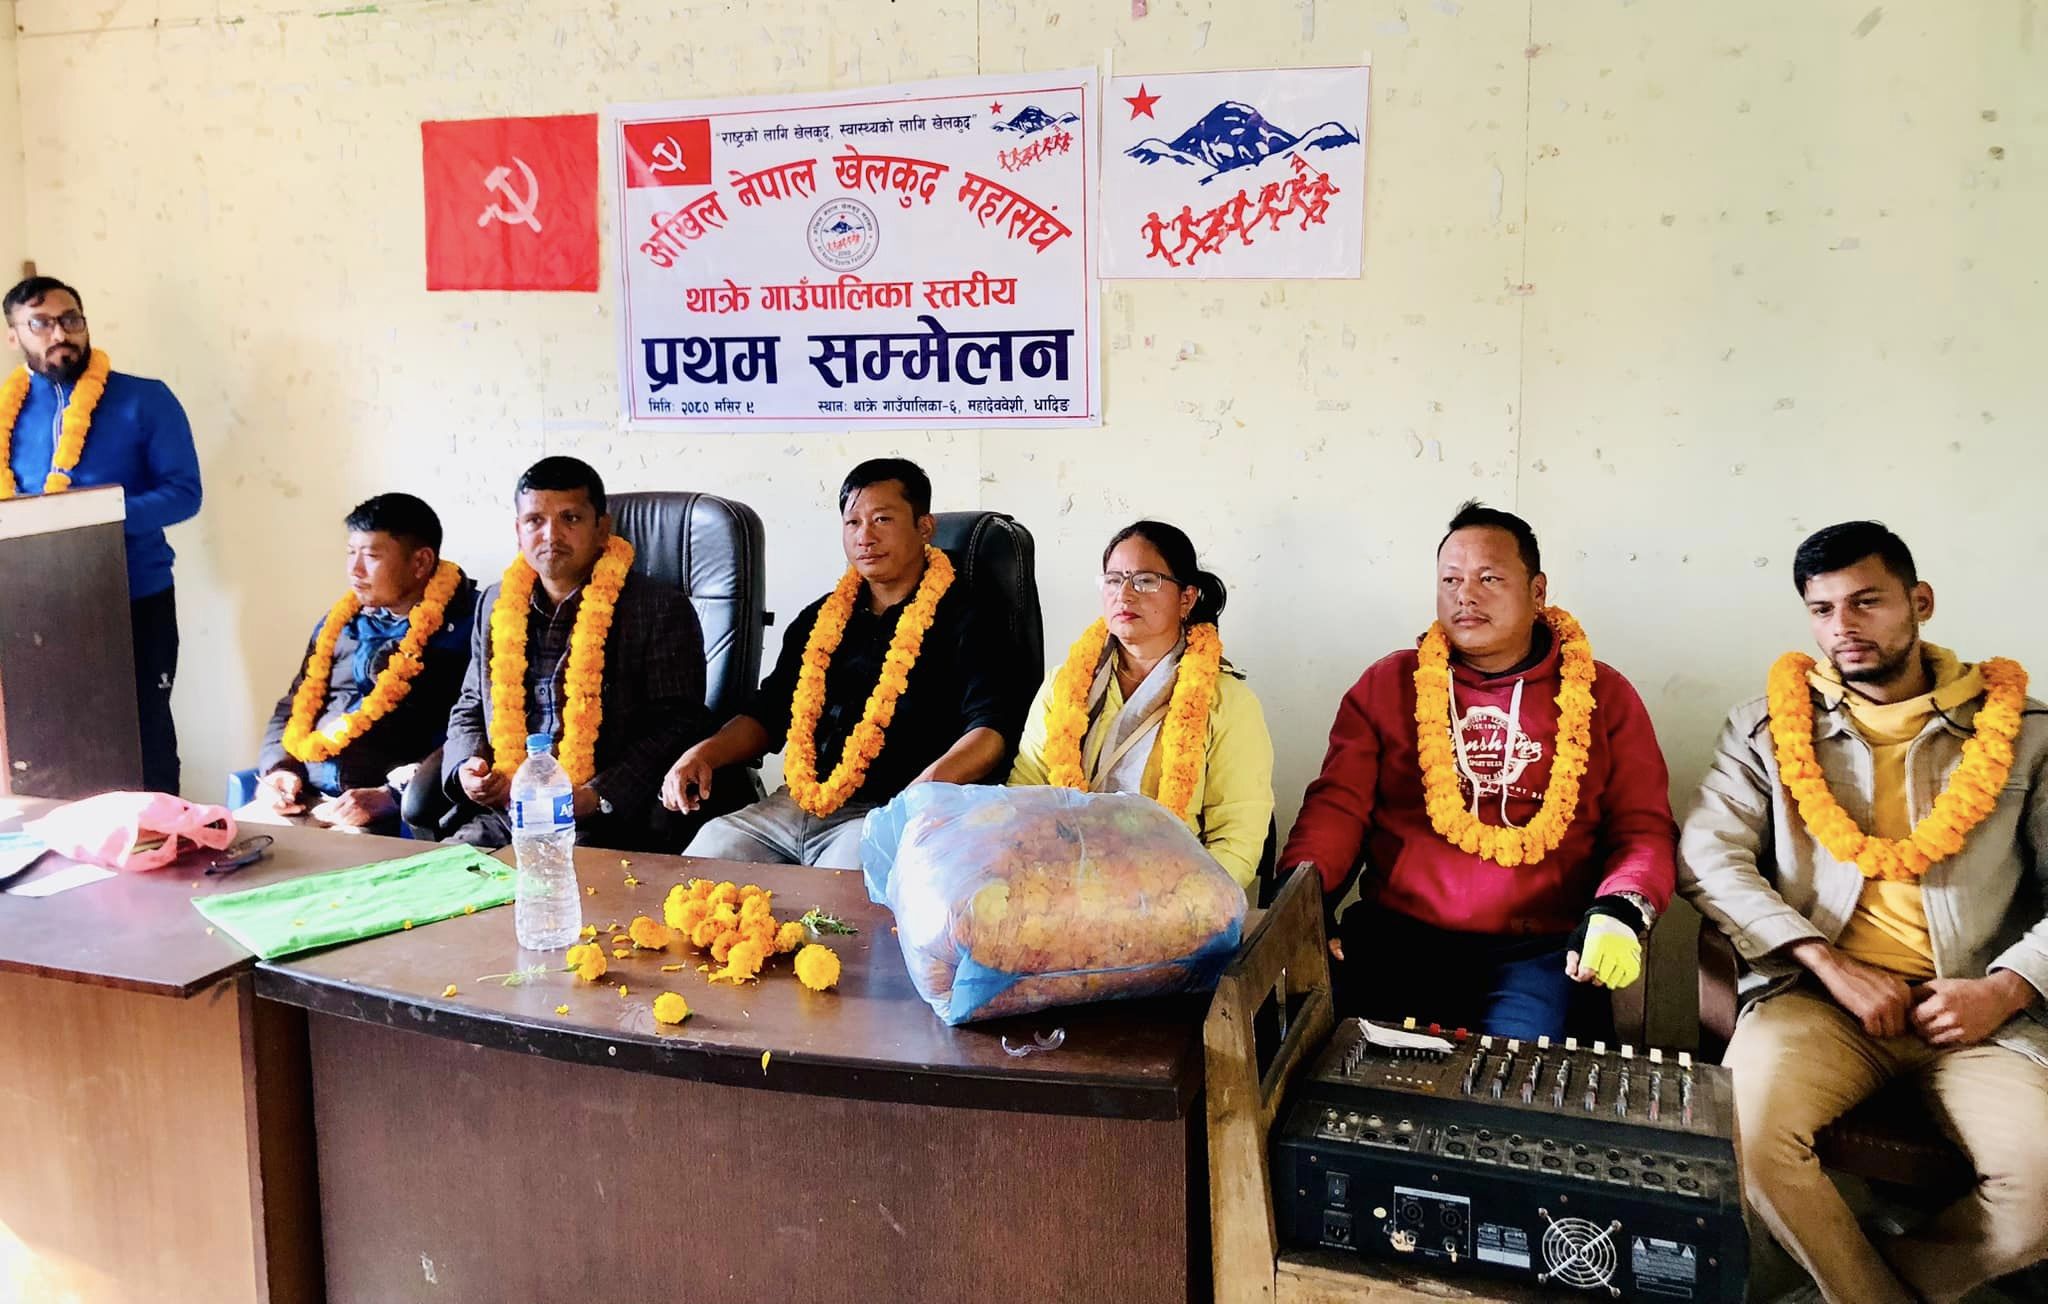 अखिल नेपाल खेलकुद मंहासघ थाक्रे गाउँपालिकाको अध्यक्षमा विरसिंह तामाङ चयन